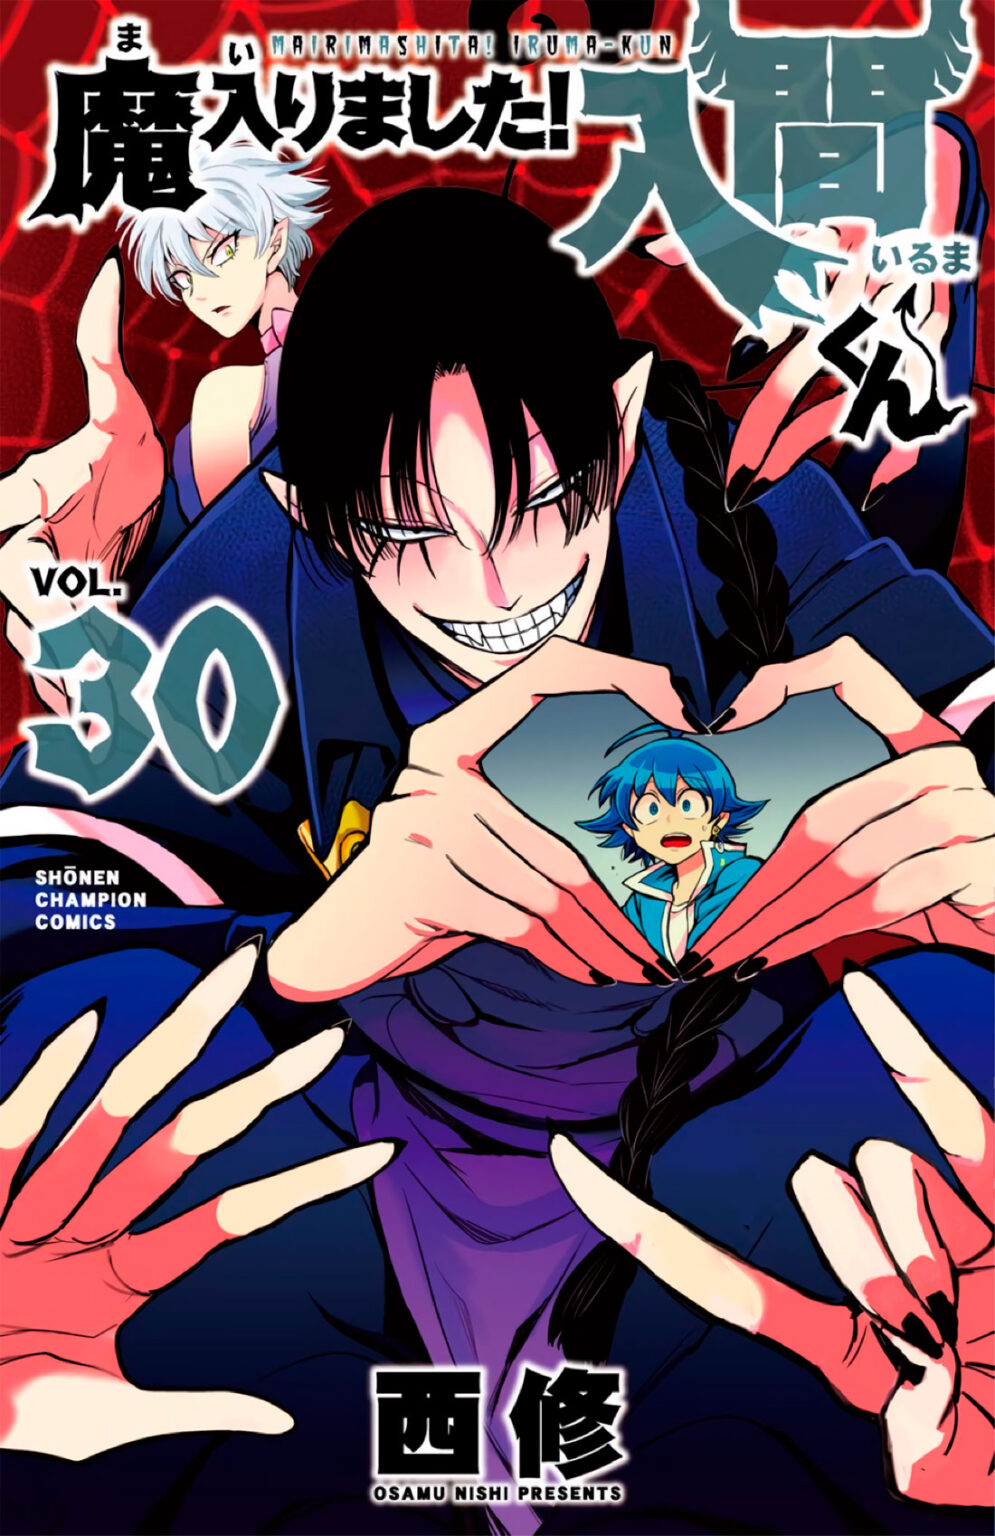 El manga Mairimashita! Iruma-kun revelo la portada de su volumen #30